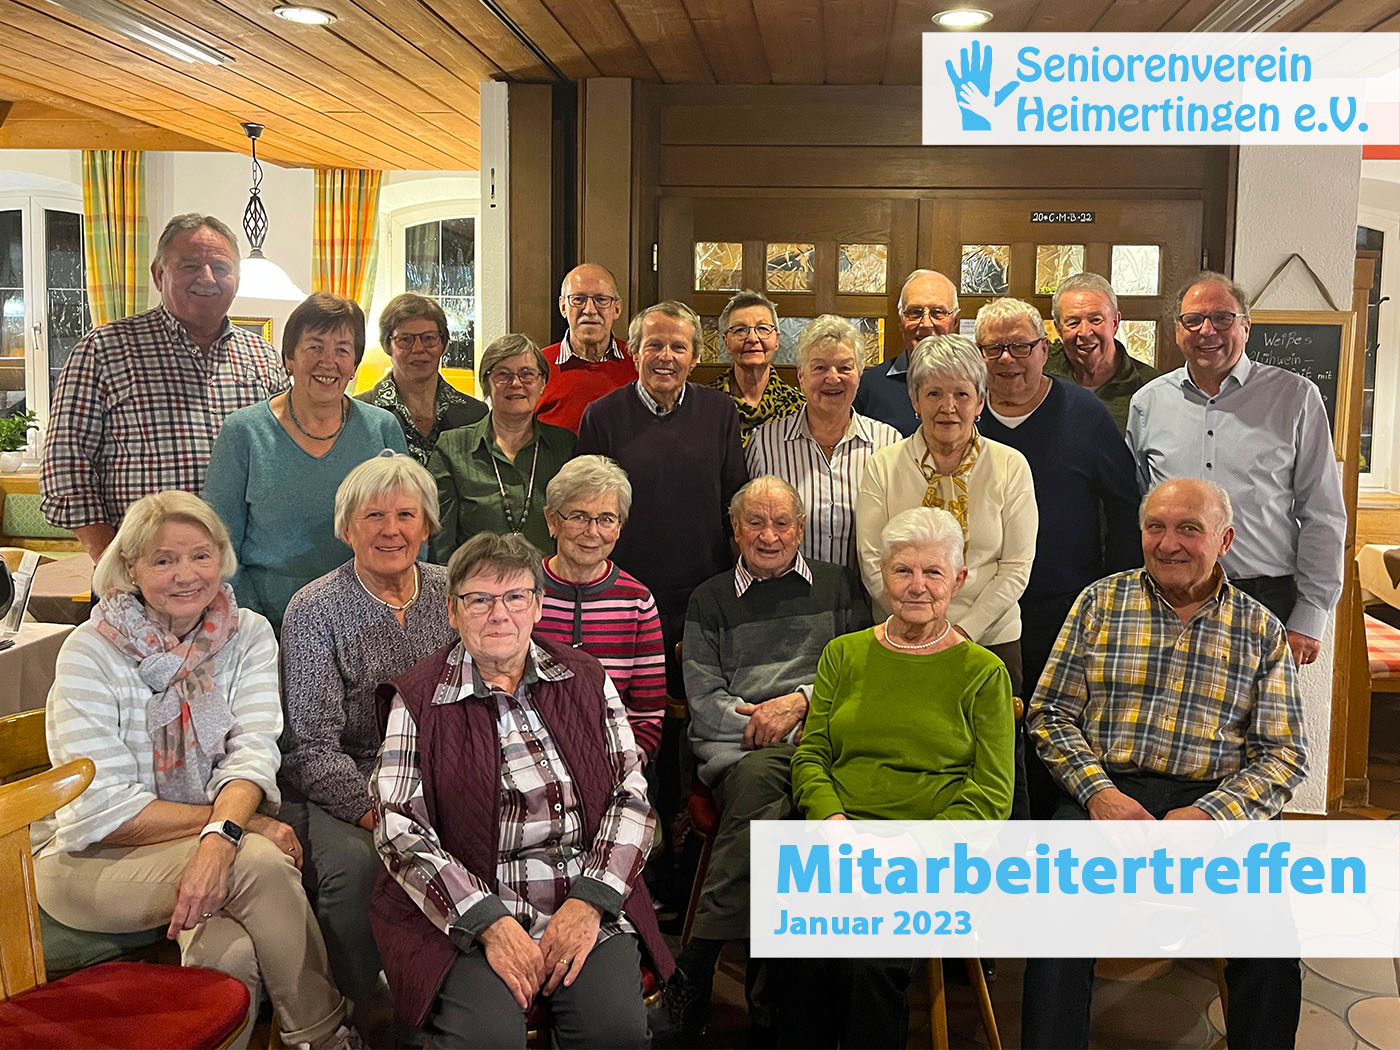 Mitarbeitertreffen 2022 Seniorenverein Heimertingen